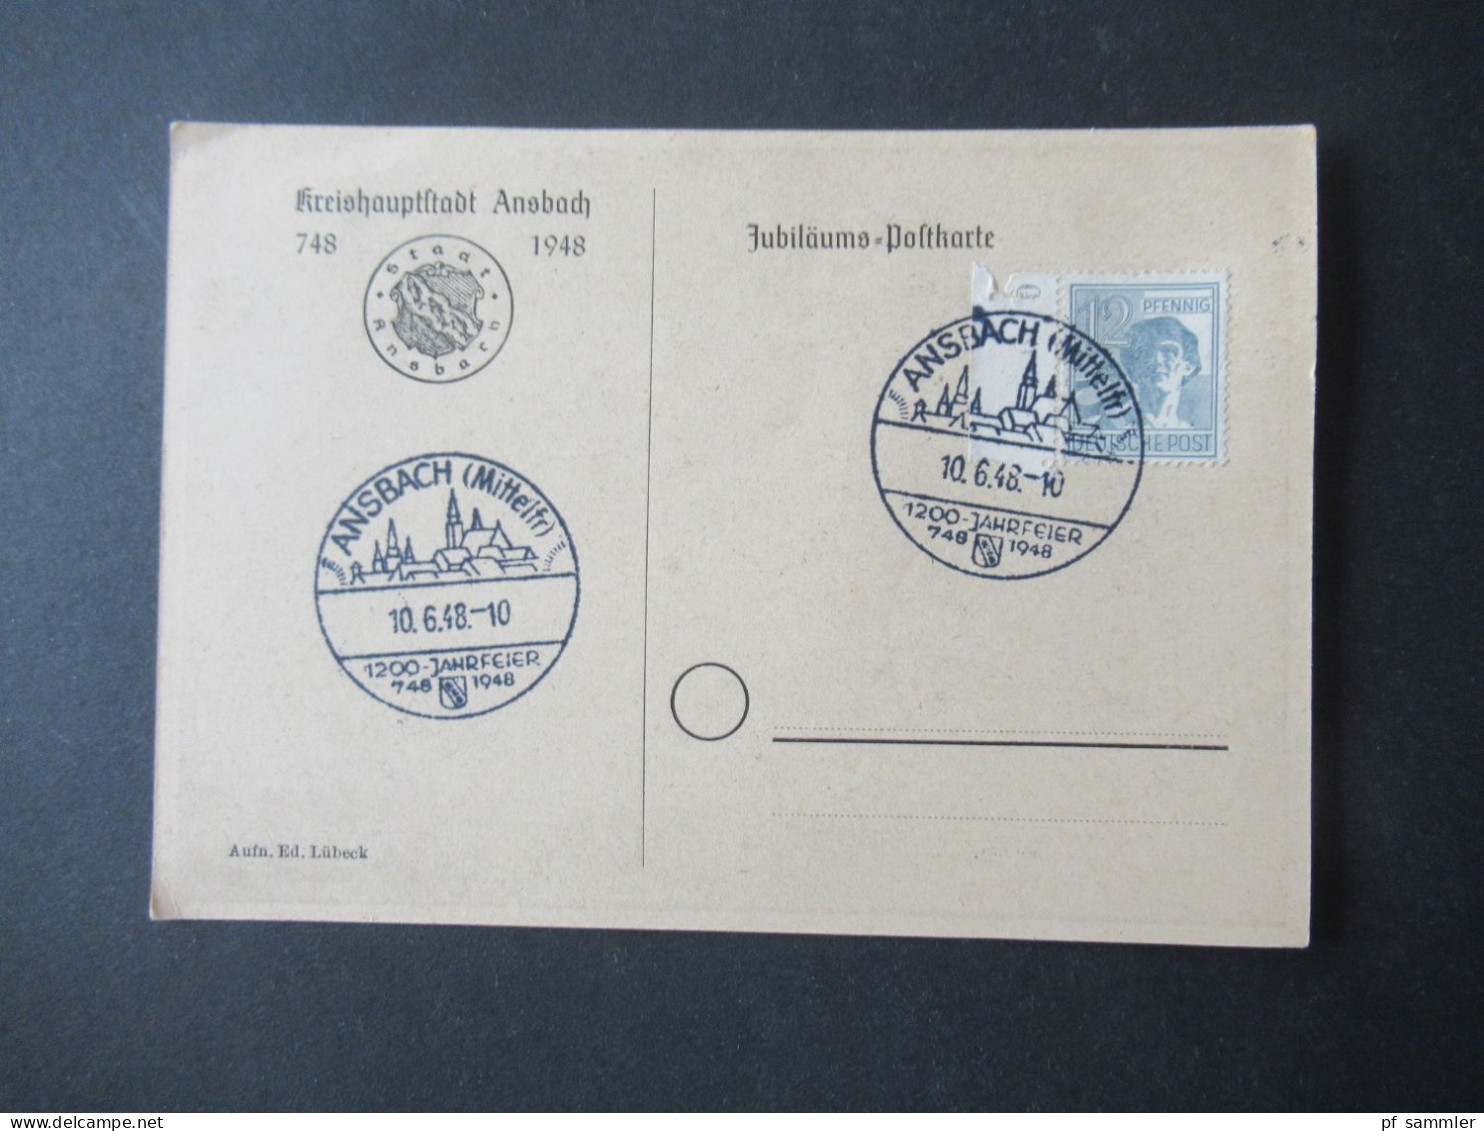 Kontrollrat 1948 PK Kreishauptstadt Ansbach Und Sonderstempel Ansbach (Mittelfr) 1200 Jahrfeier 748 - 1948 - Covers & Documents